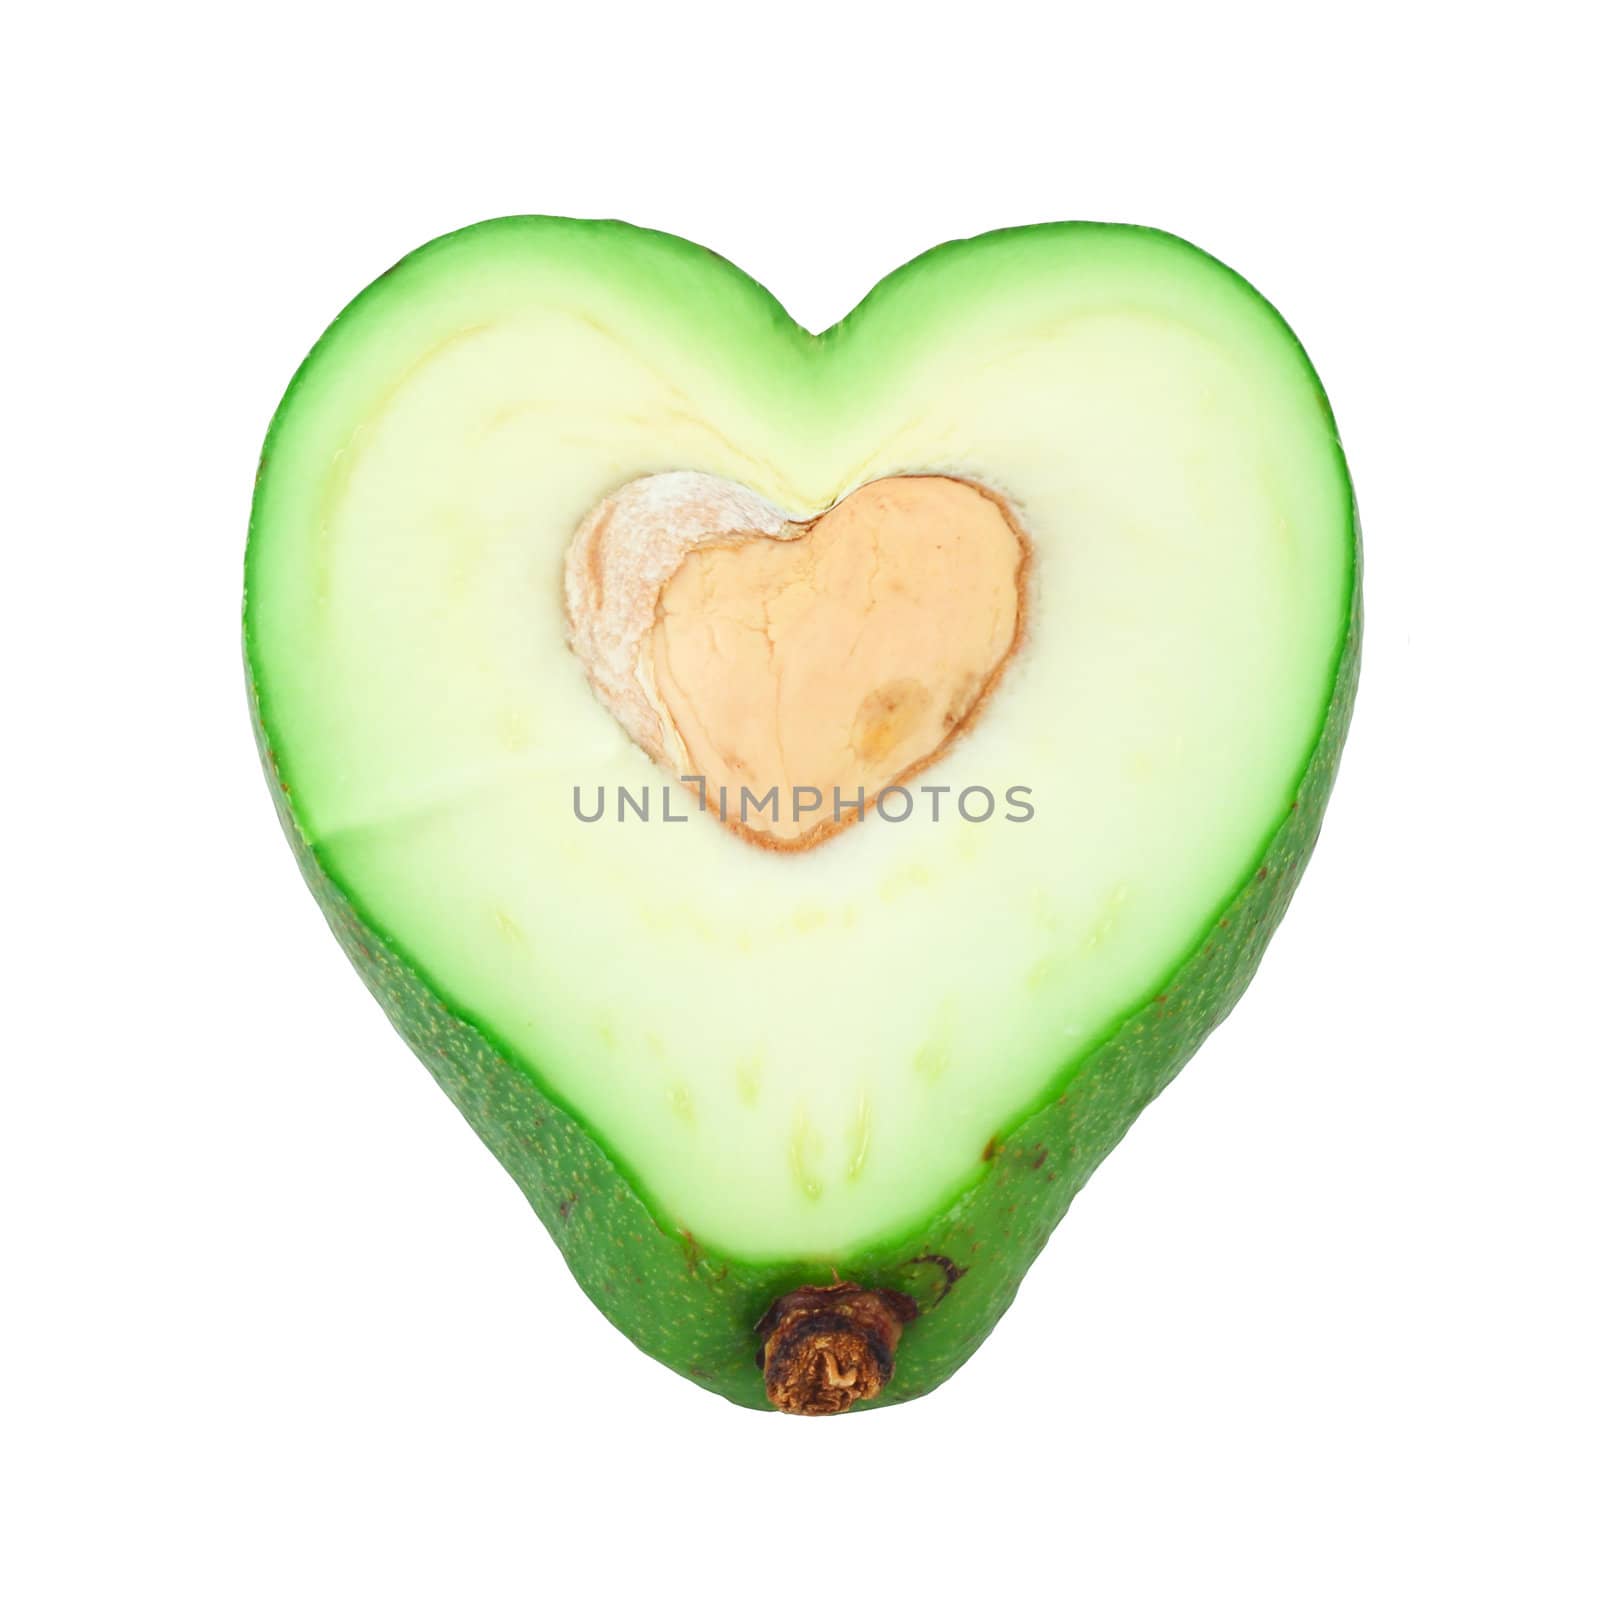 Cut avocado shaped like heart by destillat